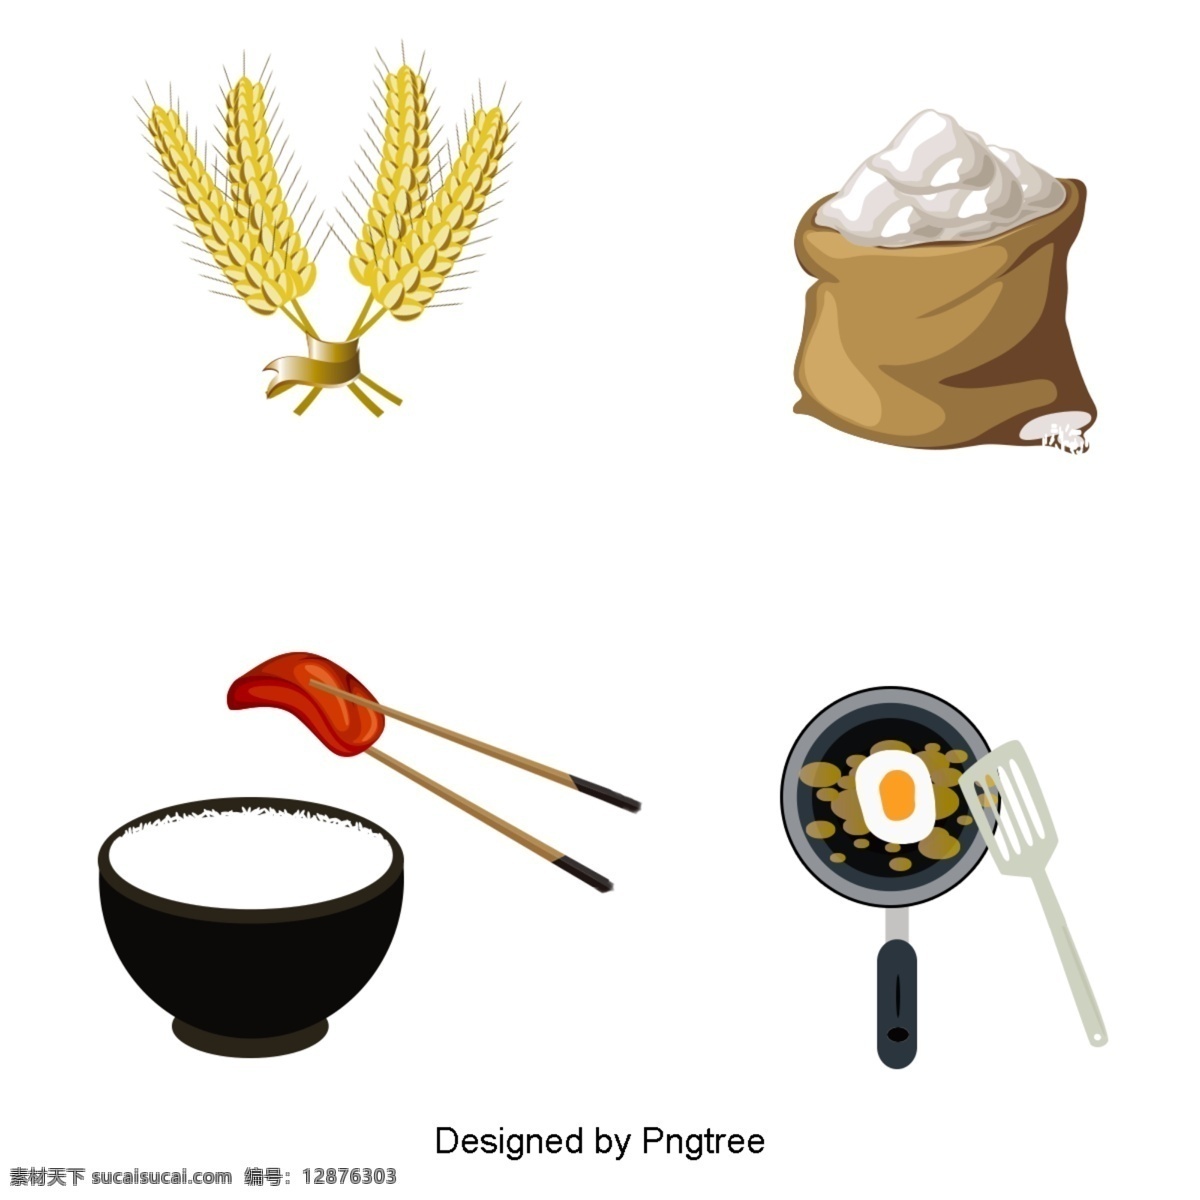 食品 烹饪 材料 载体 工具 稻谷 大米 袋子 弓 肉 锅 筷子 鞋